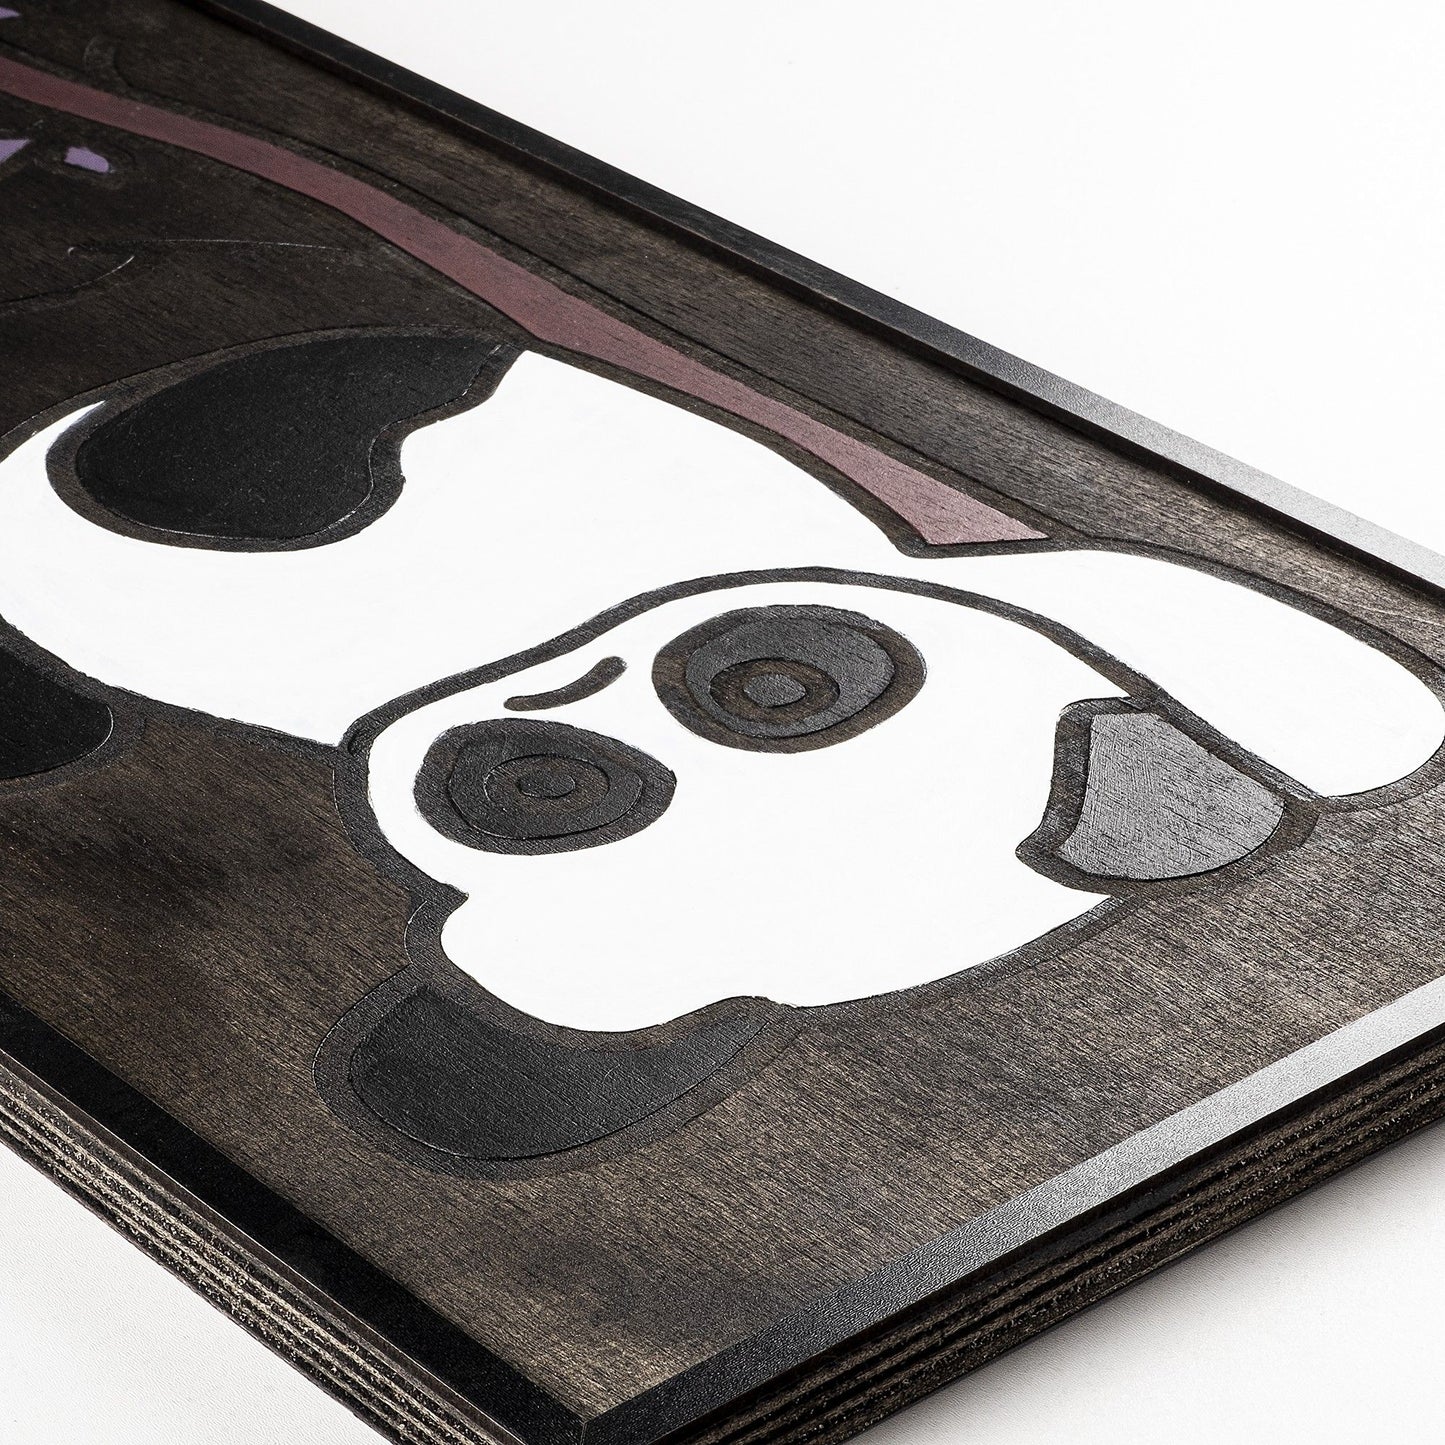 Panda Family - Dekorativt tilbehør til vægge